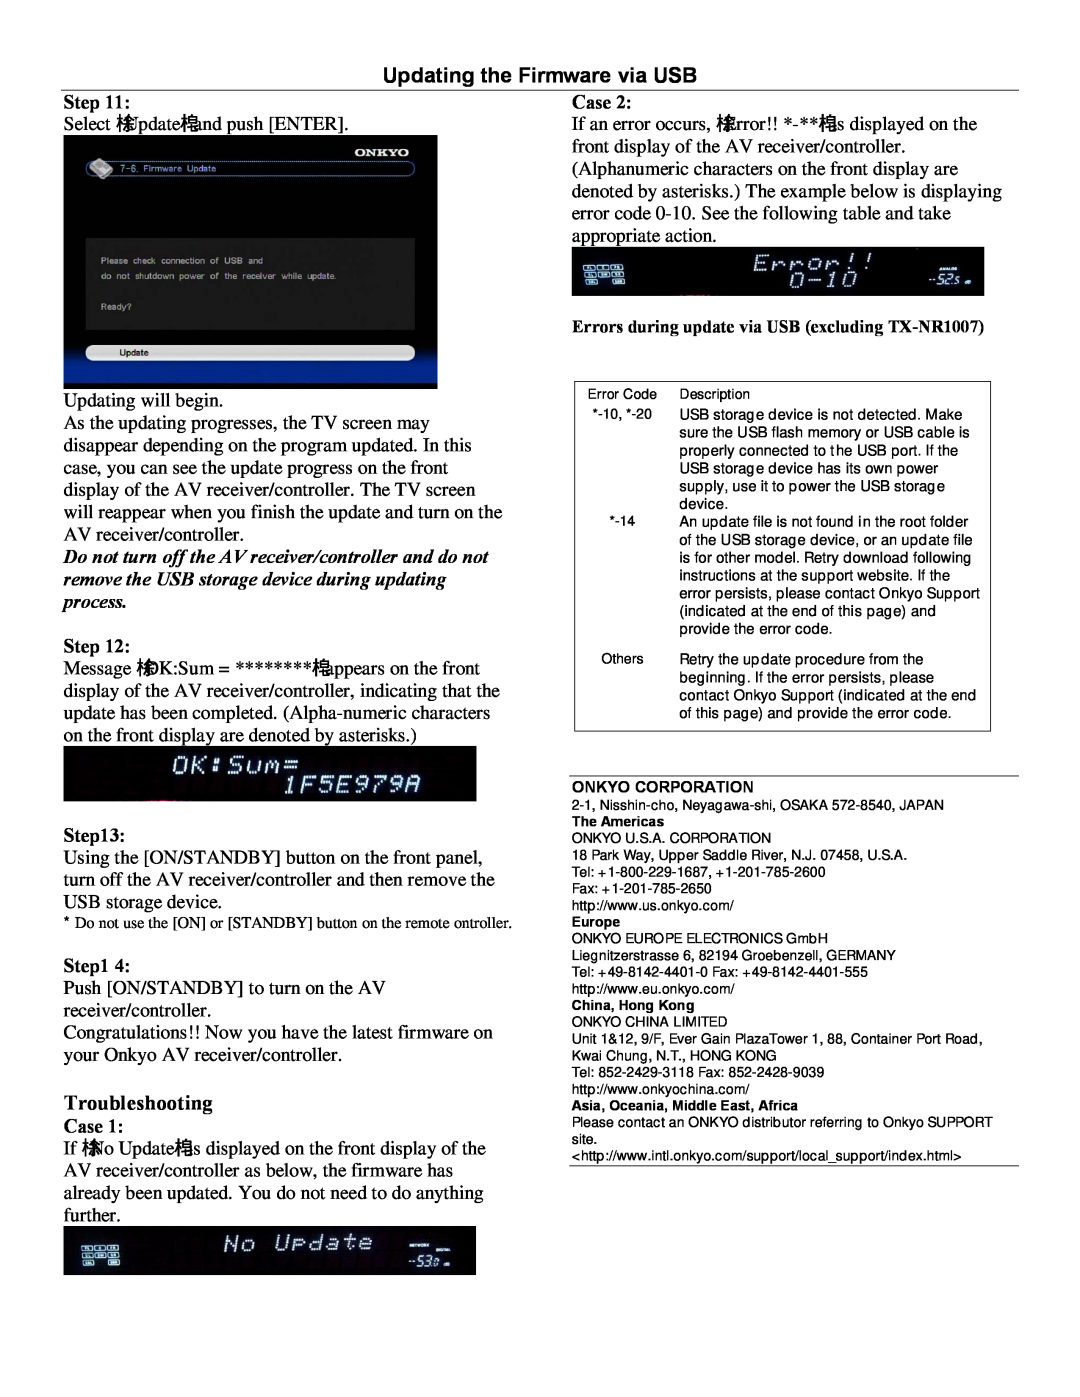 Onkyo TXNR1007, PR-SC5507, TXNR3007 manual Updating the Firmware via USB, Troubleshooting 